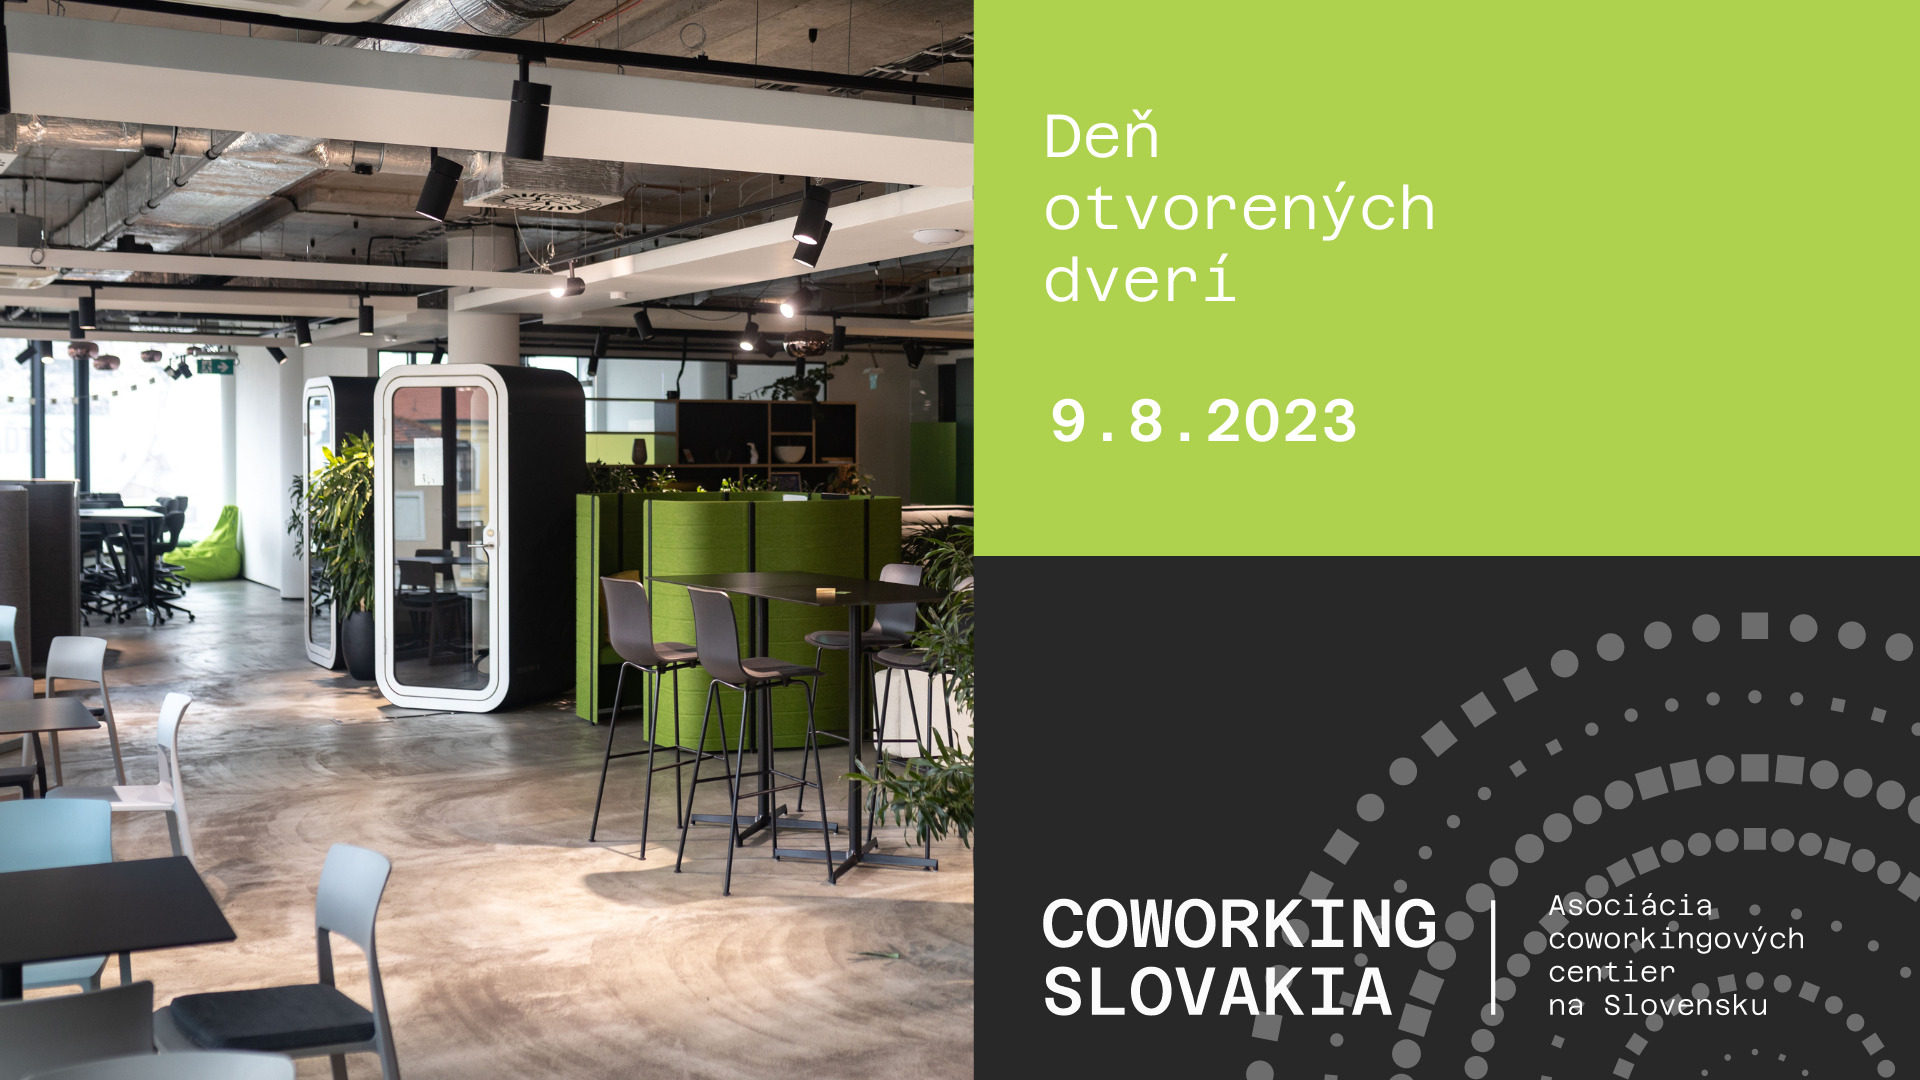 Coworking Slovakia DOD (1920 × 1080 px)